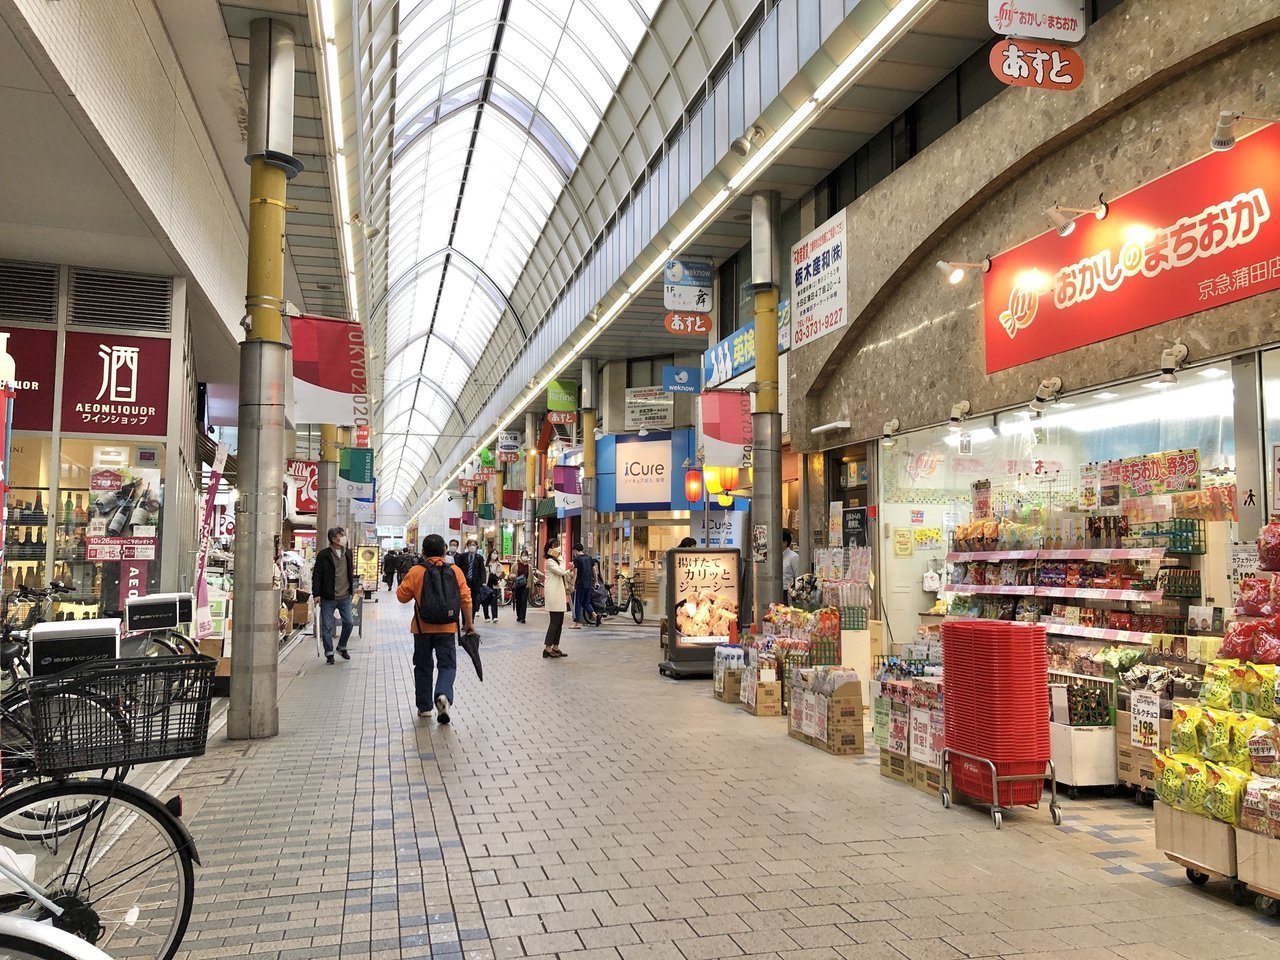 物件すぐ近くからJR蒲田駅まで、雨に濡れずに歩いていける商店街アーケードがあります。ガヤガヤした雰囲気が苦手な場合は、大通りを通っていくことも可能。